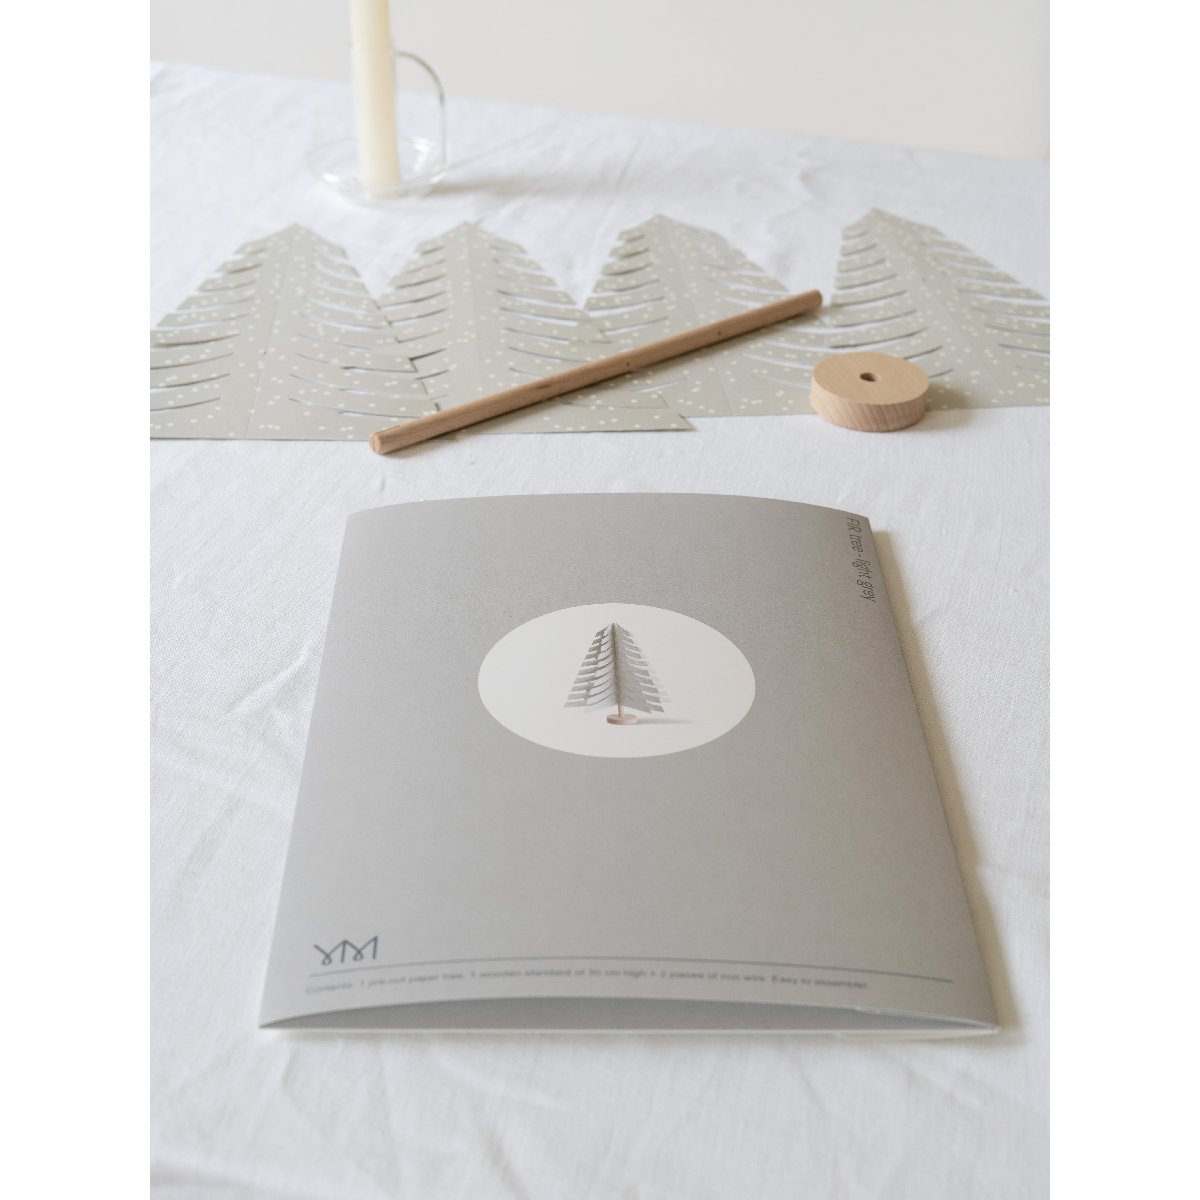 mondocherry - Jurianne Matter | fir tree | light grey - packaging